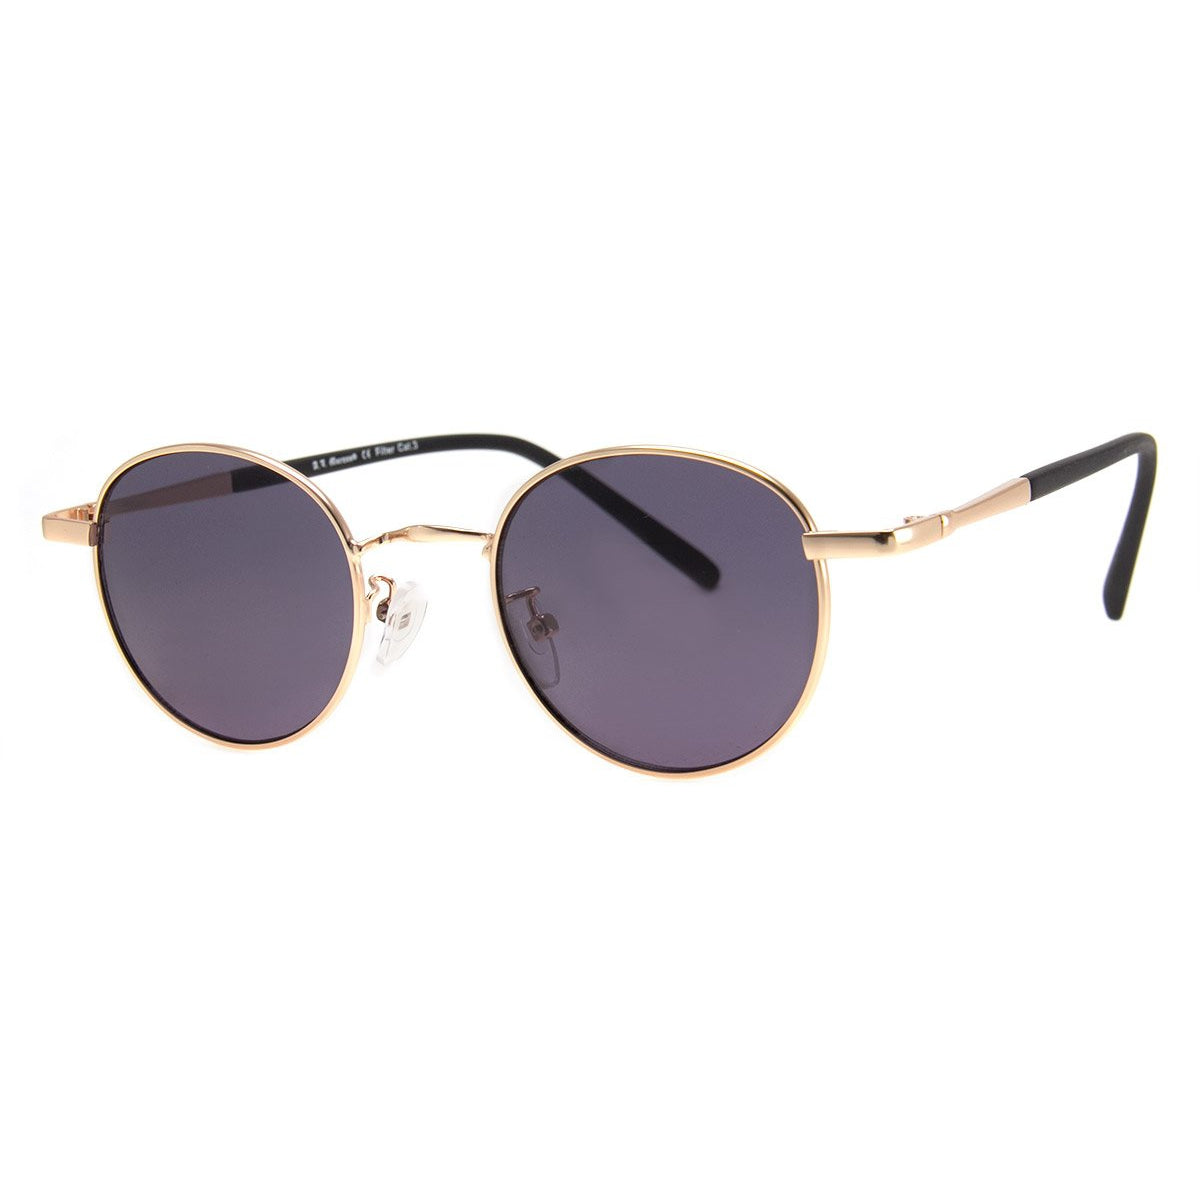 Duke's Sunglasses - Gold